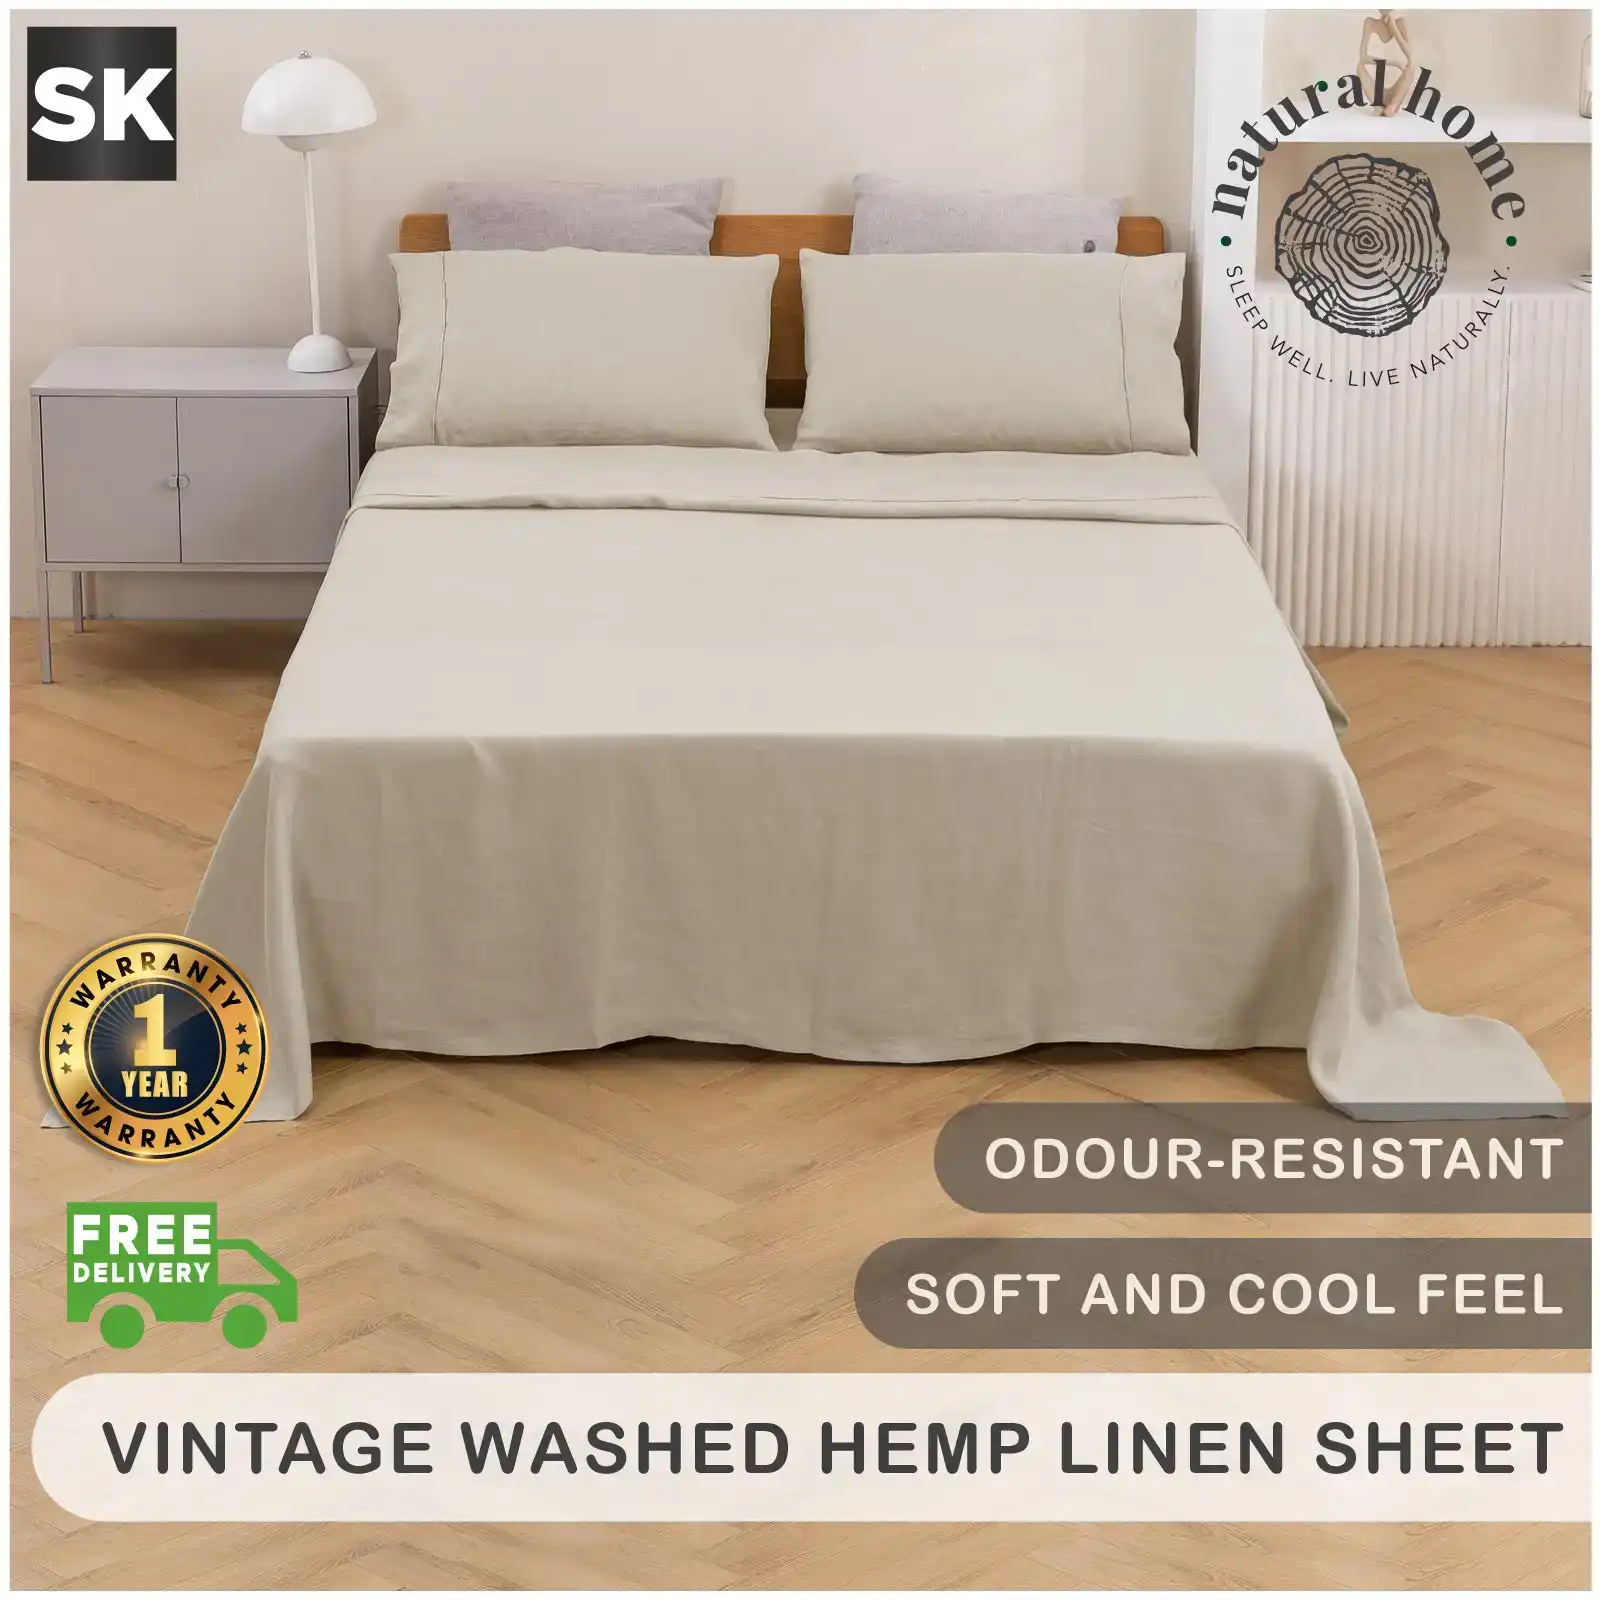 Natural Home Vintage Washed Hemp Linen Sheet Set Oatmeal Super King Bed